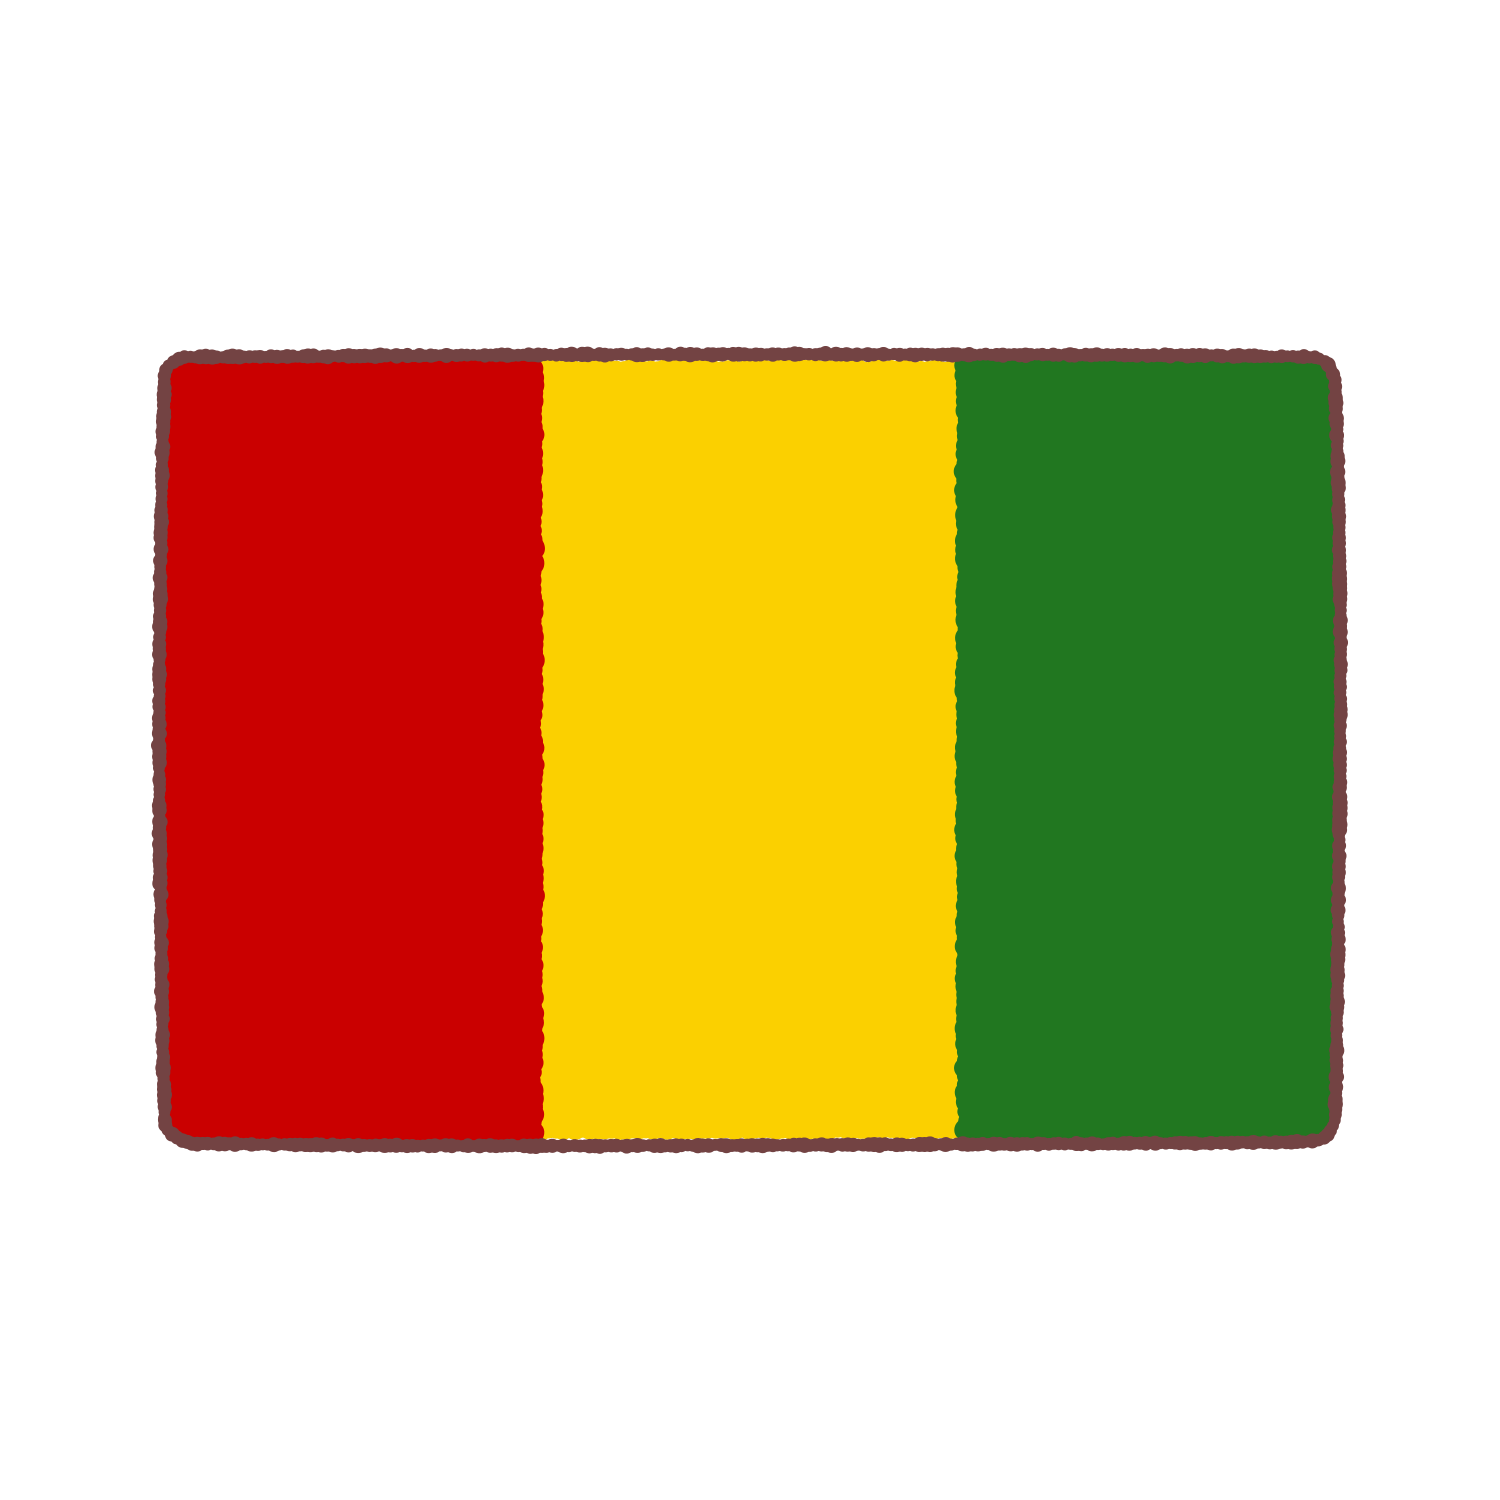 ギニア国旗のイラスト